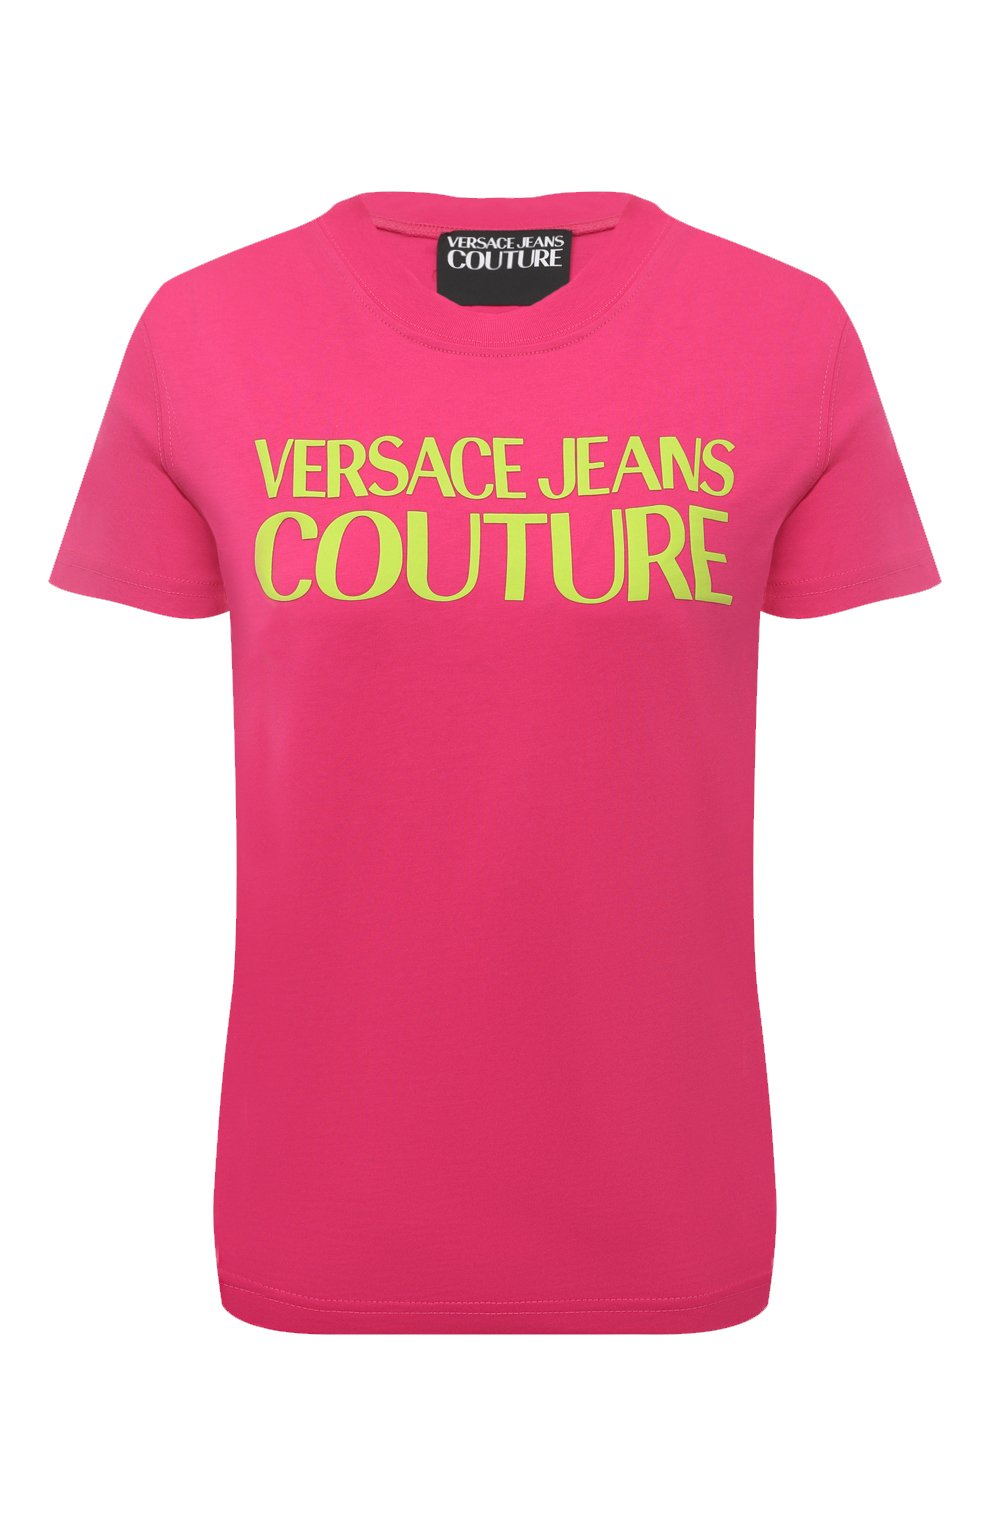 Футболки и топы Versace Jeans Couture, Хлопковая футболка Versace Jeans Couture, Турция, Розовый, Хлопок: 100%;, 13369352  - купить